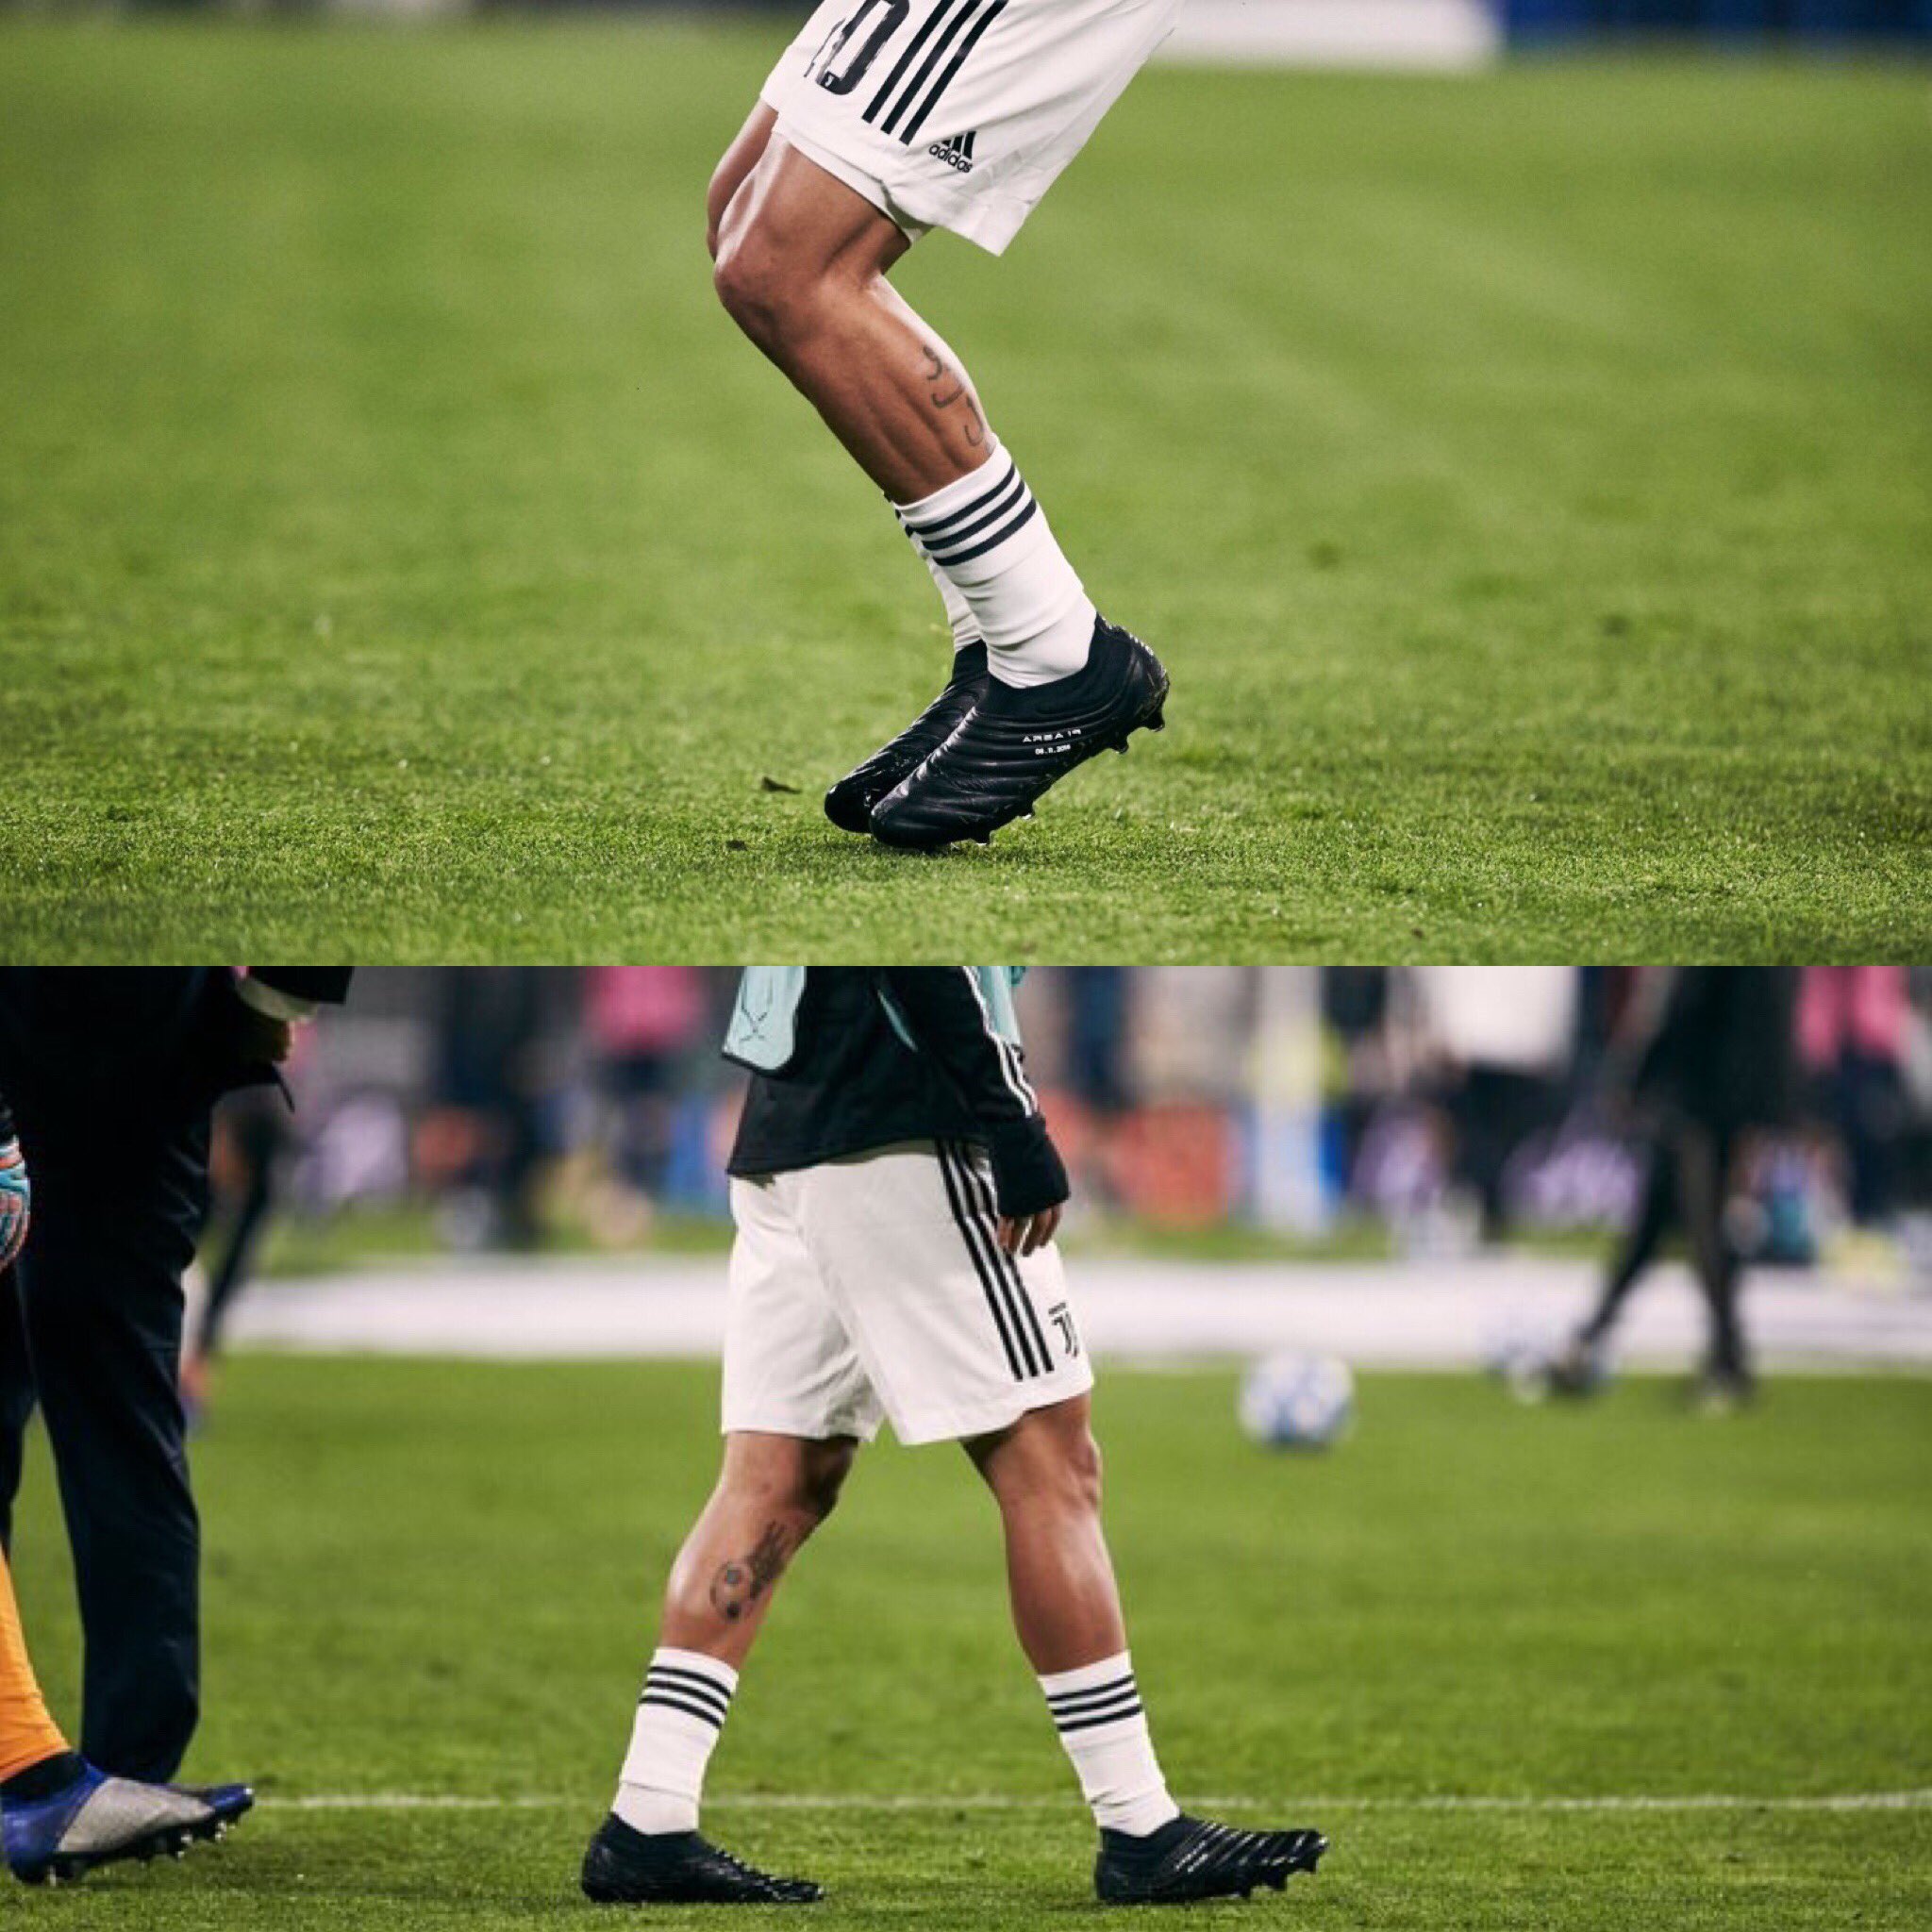 Mundialistas on Twitter: "Las botas Adidas Copa que Paulo Dybala portó en el partido ante Manchester United. Elegancia pura. https://t.co/XAAOX11bmn" / Twitter